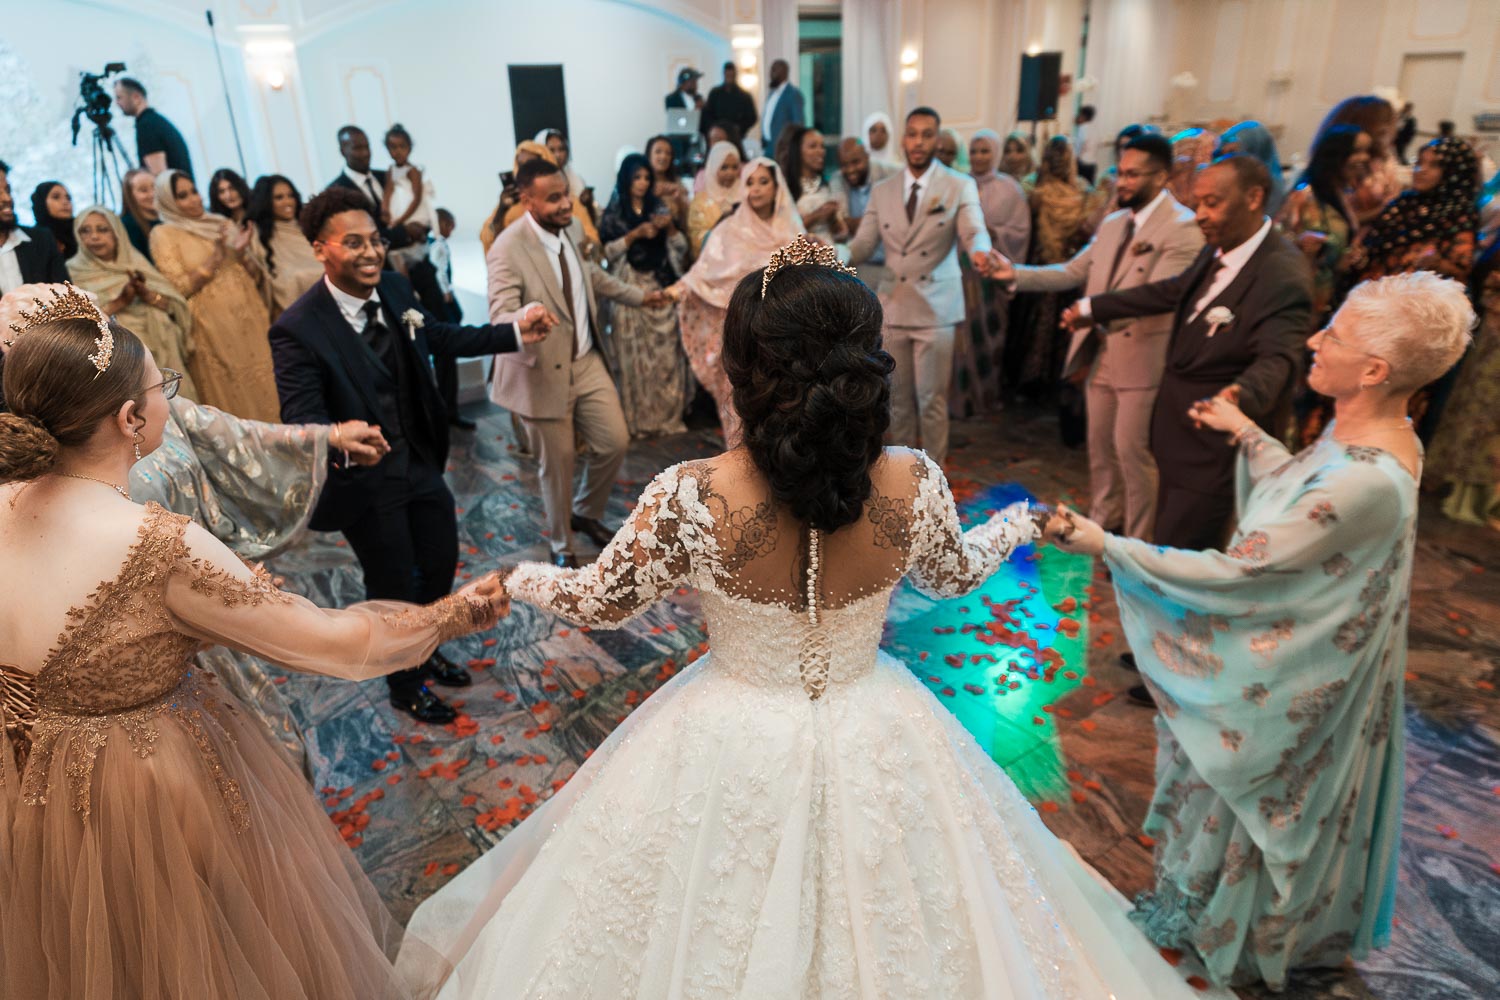 Braut und Bräutigam, Hand in Hand, tanzen im Kreis mit ihren Gästen.